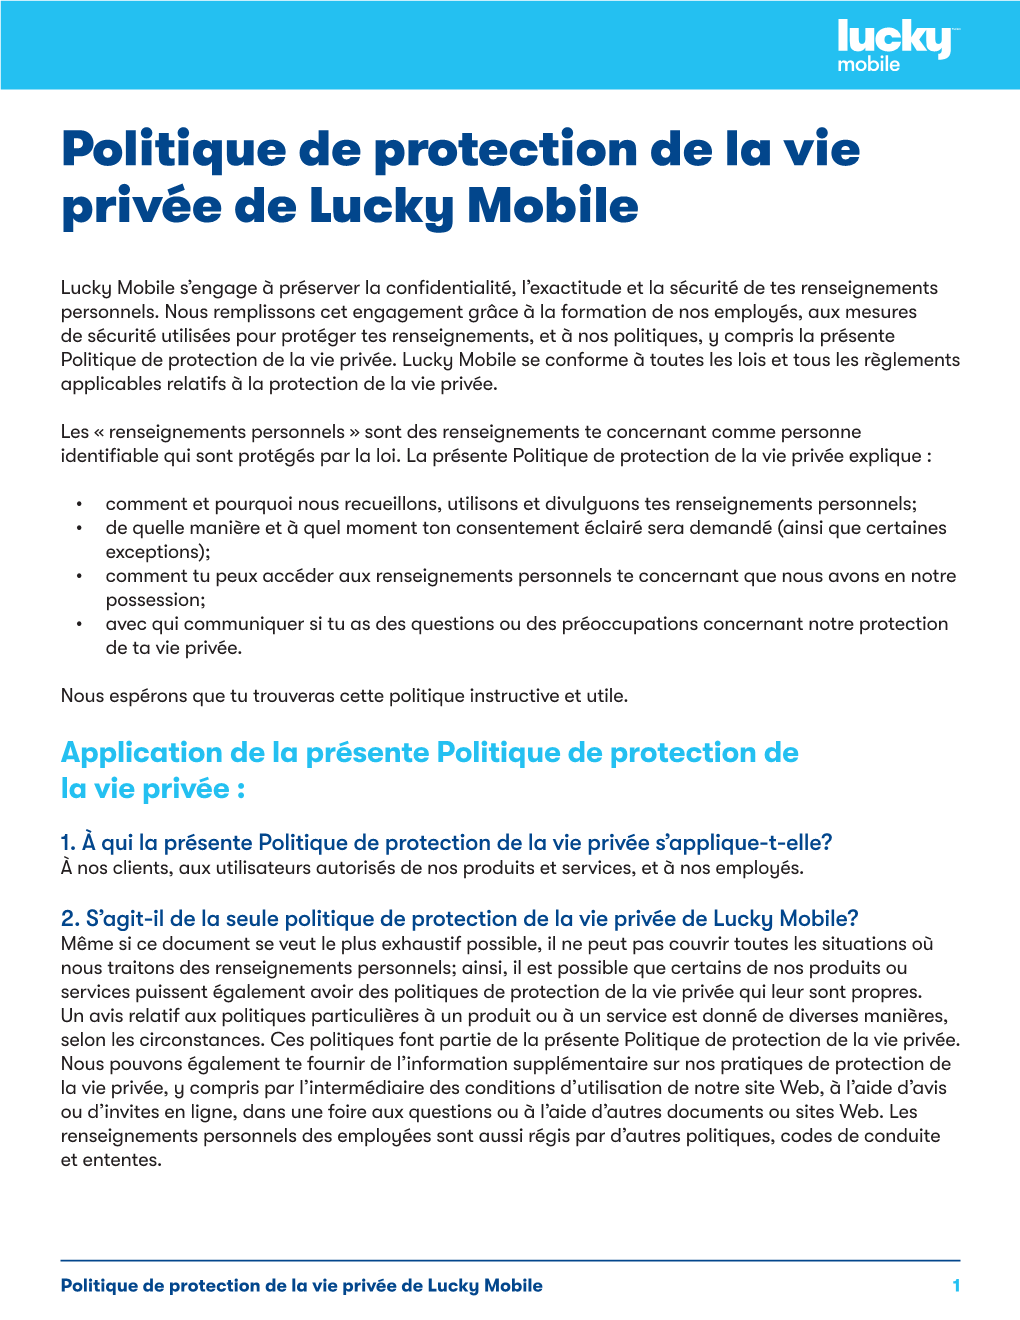 Politique De Protection De La Vie Privée De Lucky Mobile